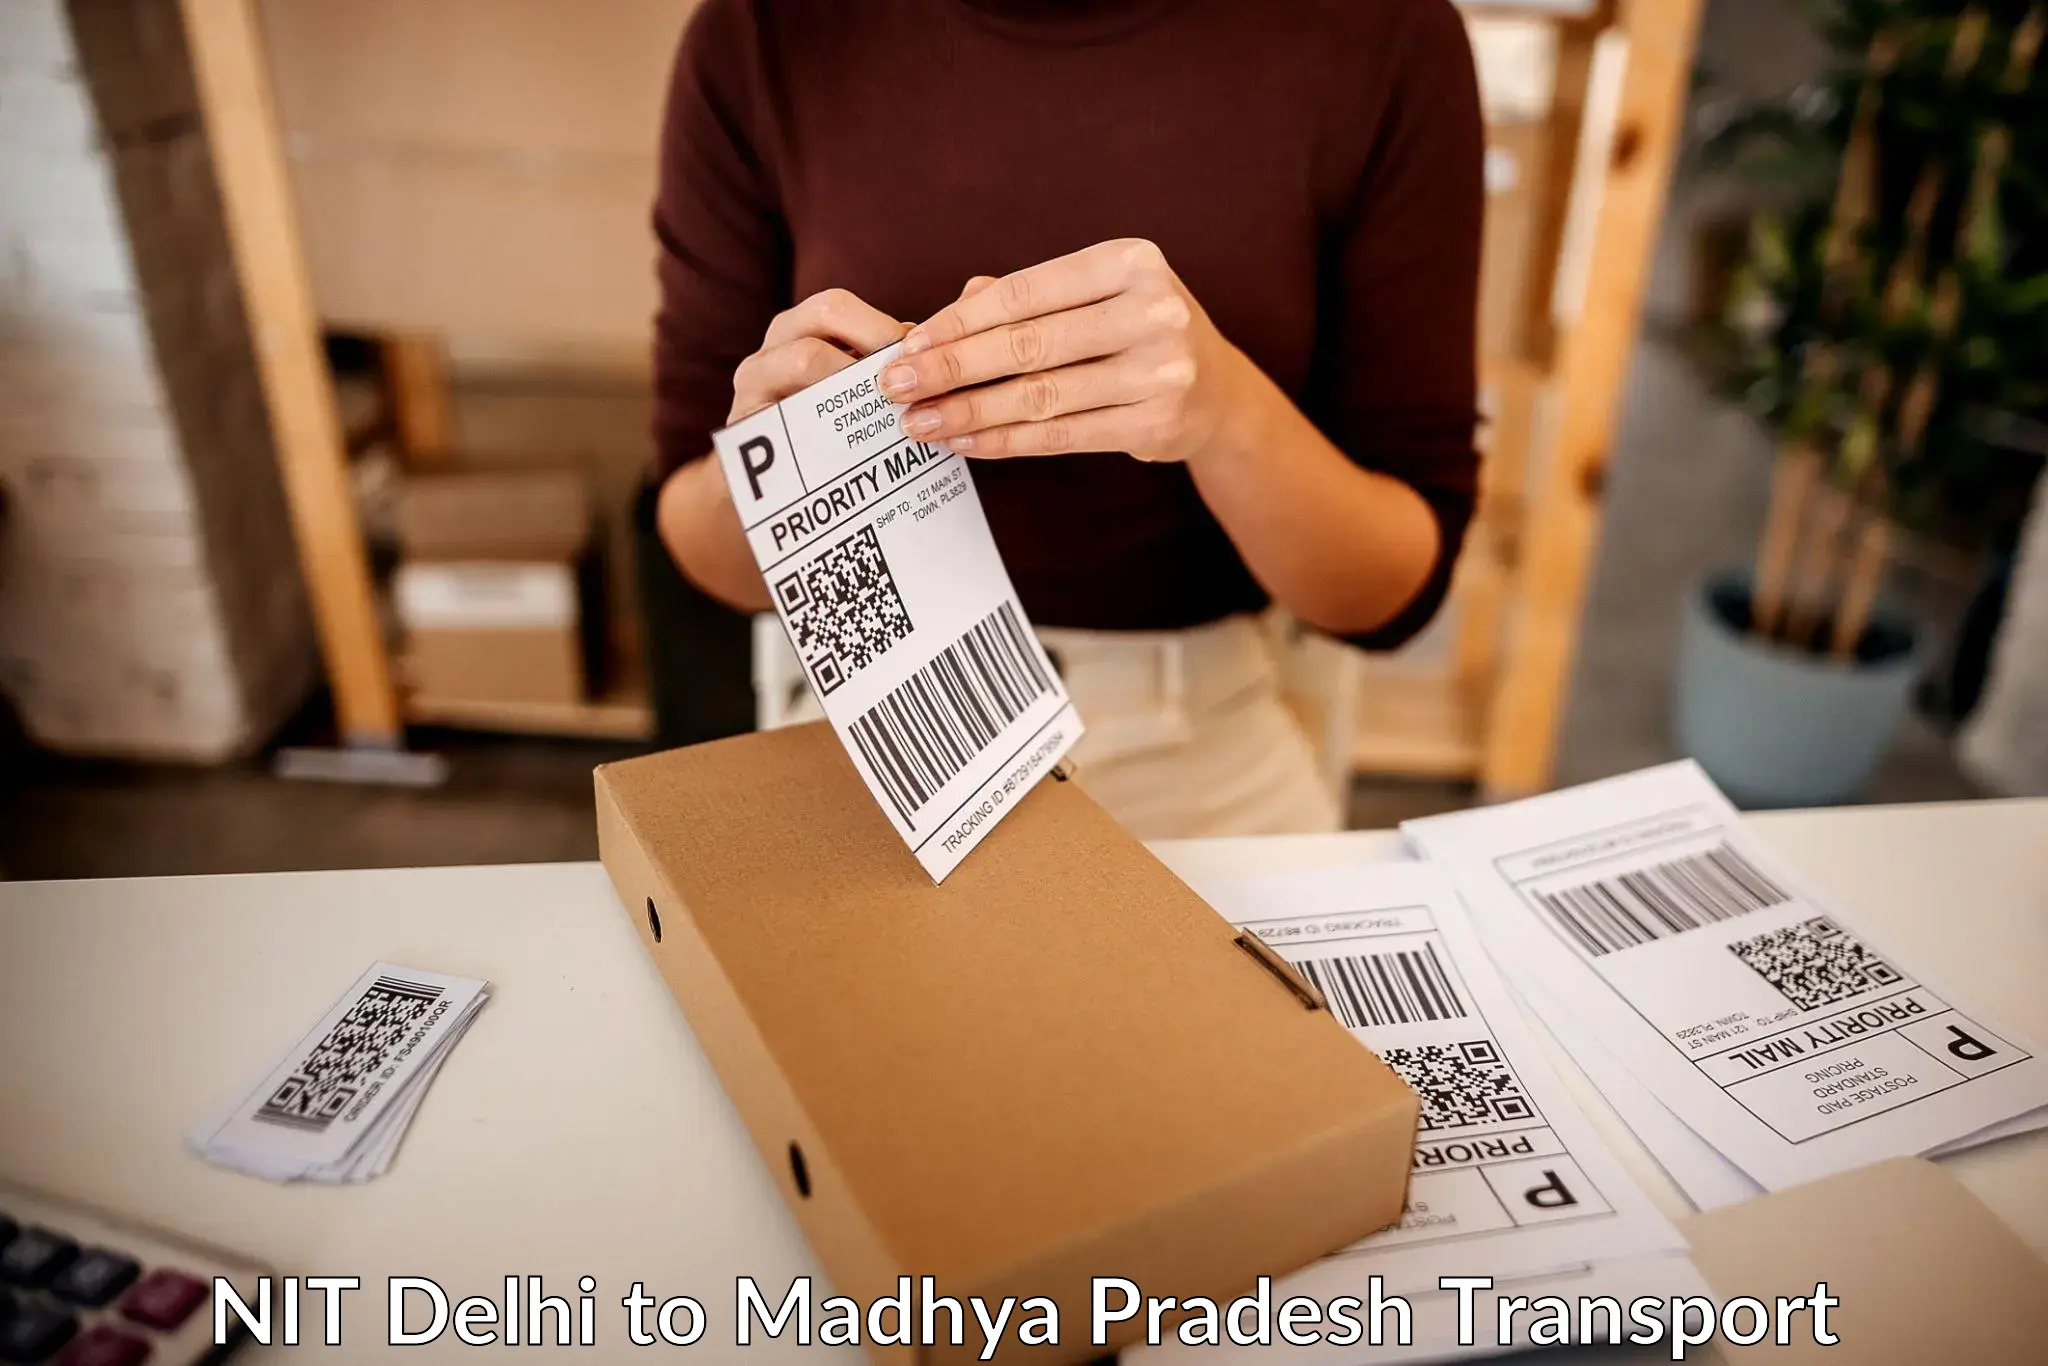 Shipping partner NIT Delhi to Nalkheda